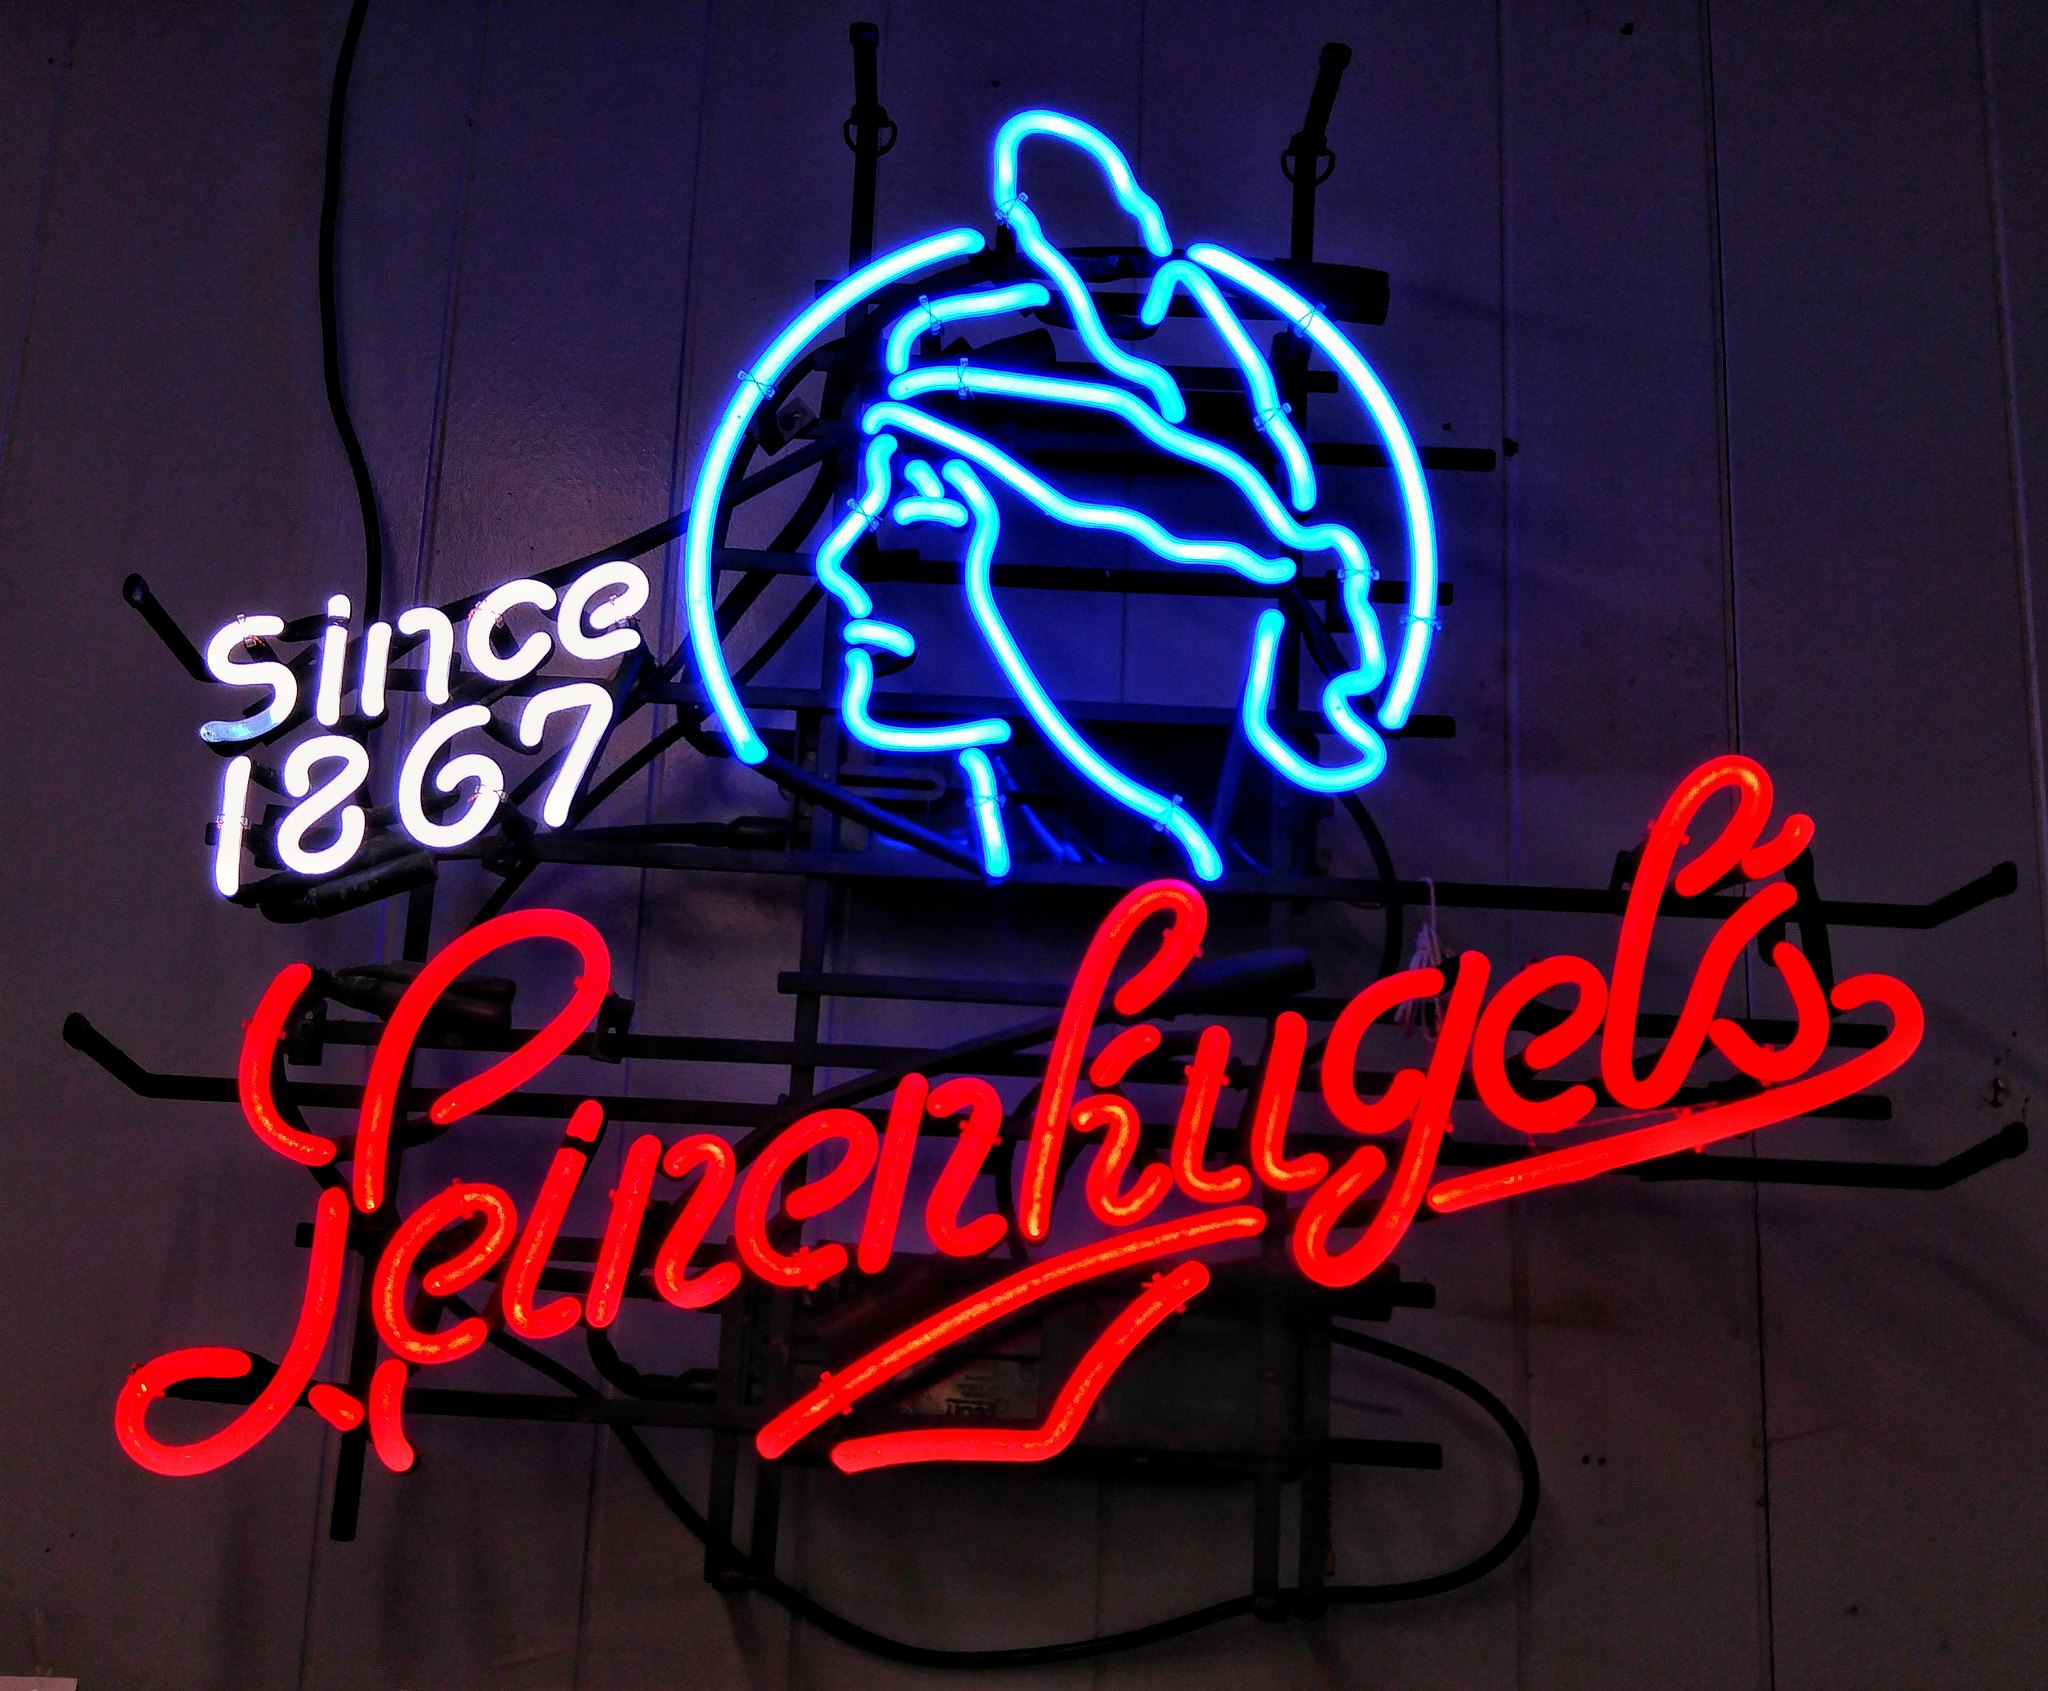 Leinenkugel's sign